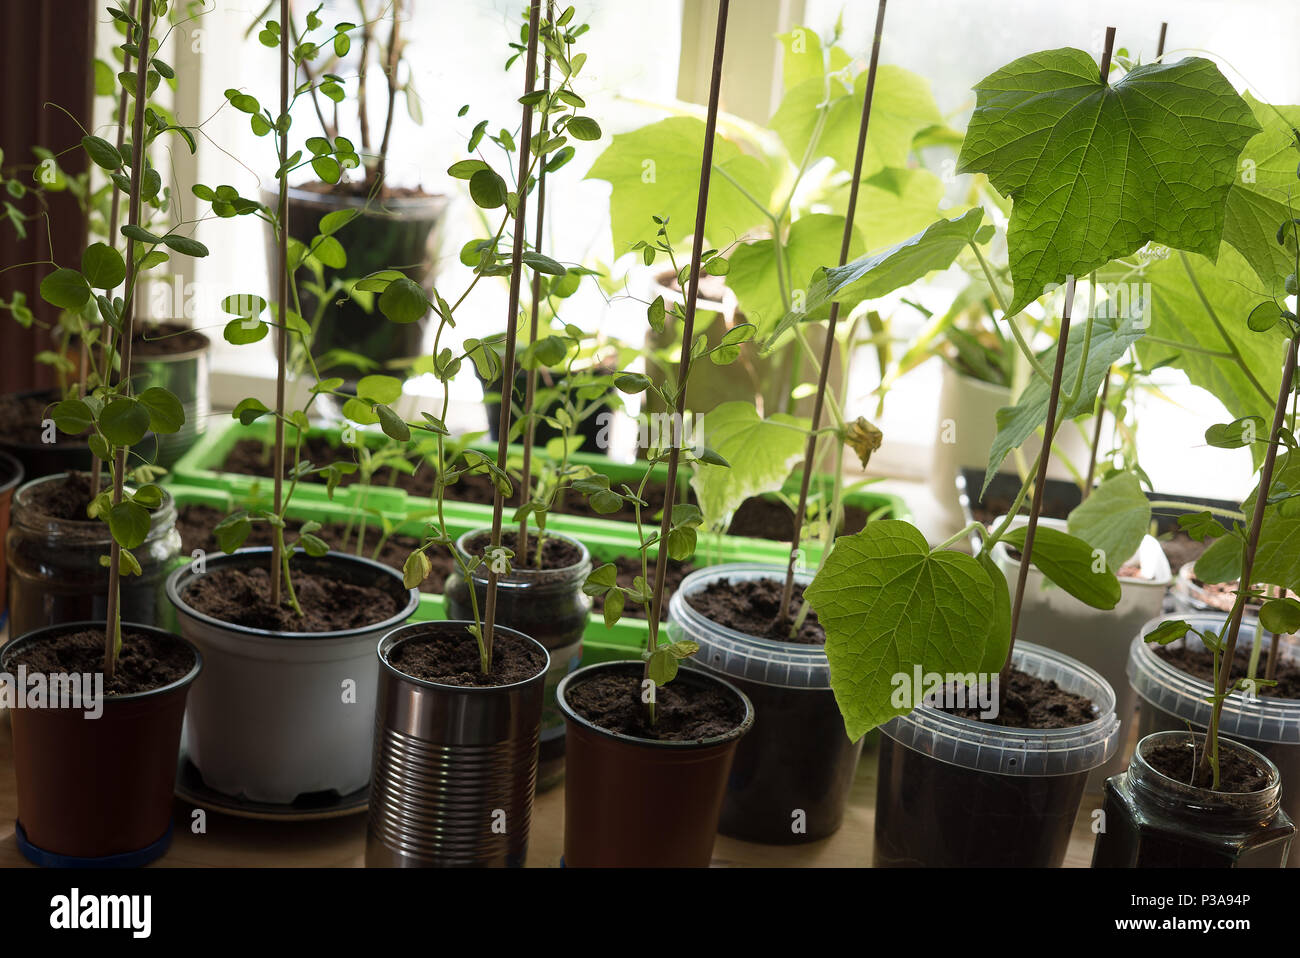 Eine Küche - Garten mit organischen, homegrown junge Pflanzen von Gurken, Zuckerschoten und Pfeffer. Stockfoto